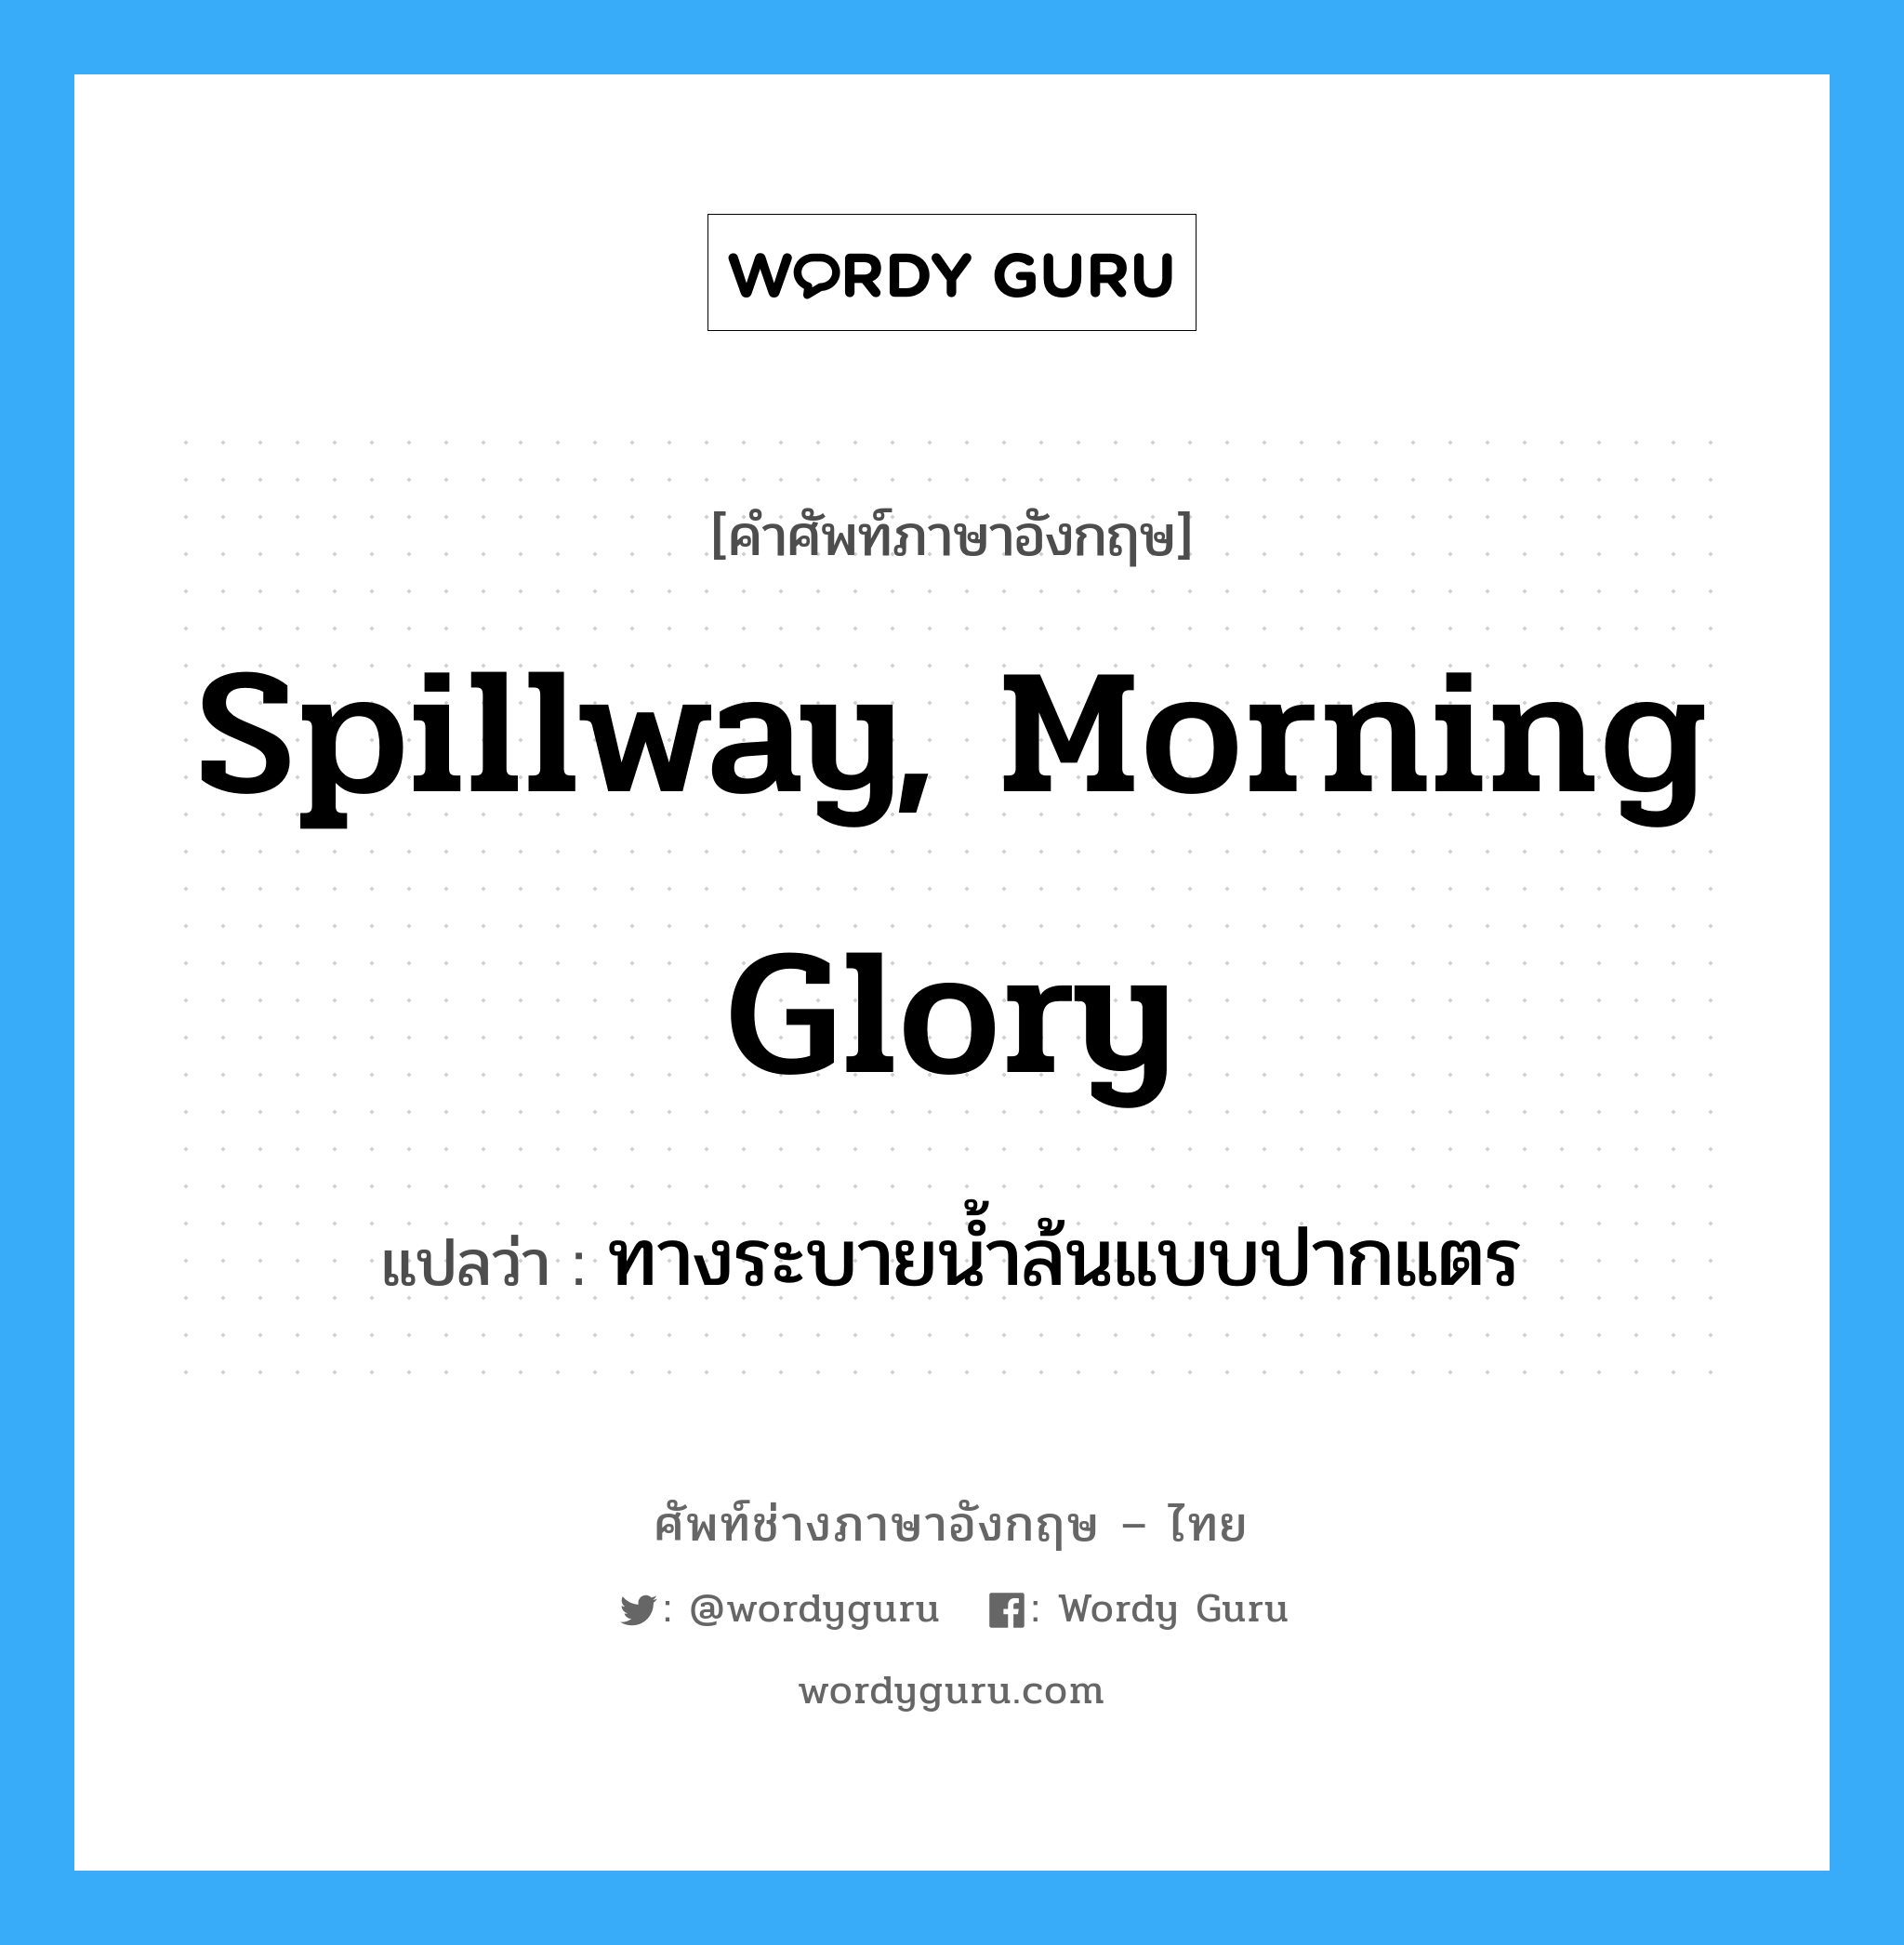 ทางระบายน้ำล้นแบบปากแตร ภาษาอังกฤษ?, คำศัพท์ช่างภาษาอังกฤษ - ไทย ทางระบายน้ำล้นแบบปากแตร คำศัพท์ภาษาอังกฤษ ทางระบายน้ำล้นแบบปากแตร แปลว่า spillway, morning glory